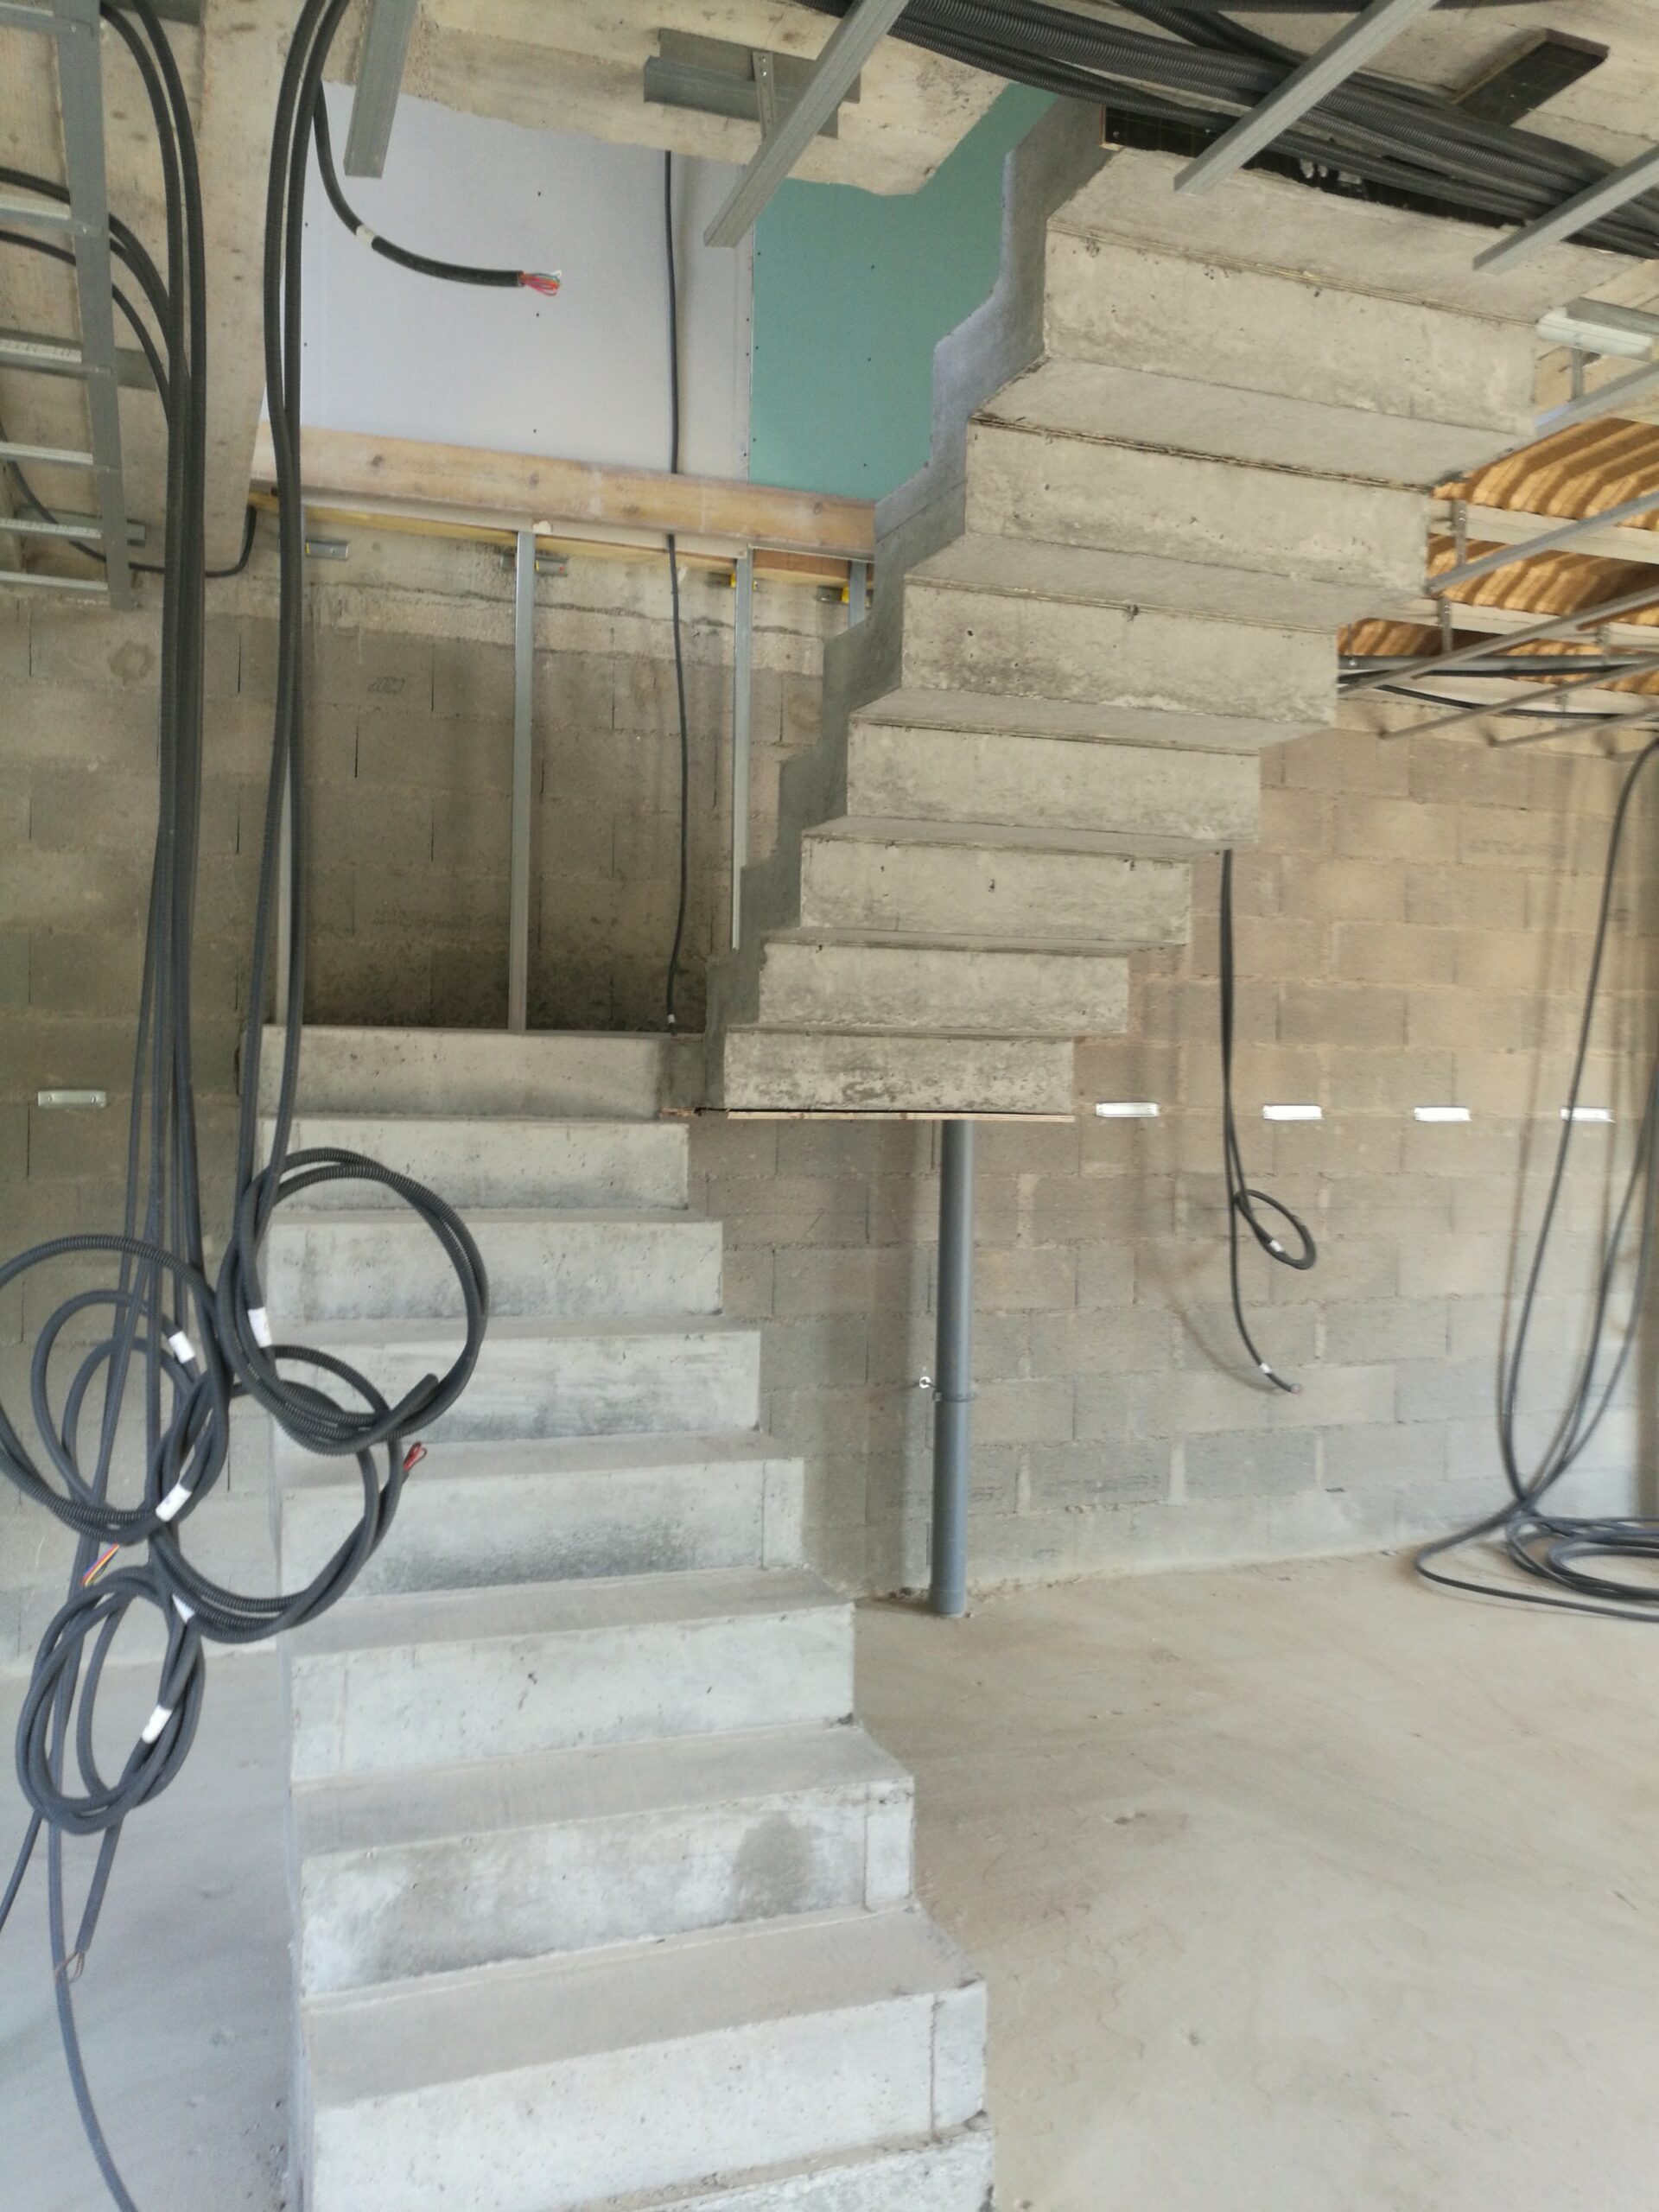 Escalier à crémaillère construit pour un particulier, à Arpajon près de Brétigny-sur-Orge, dans le département de l'Essonne.